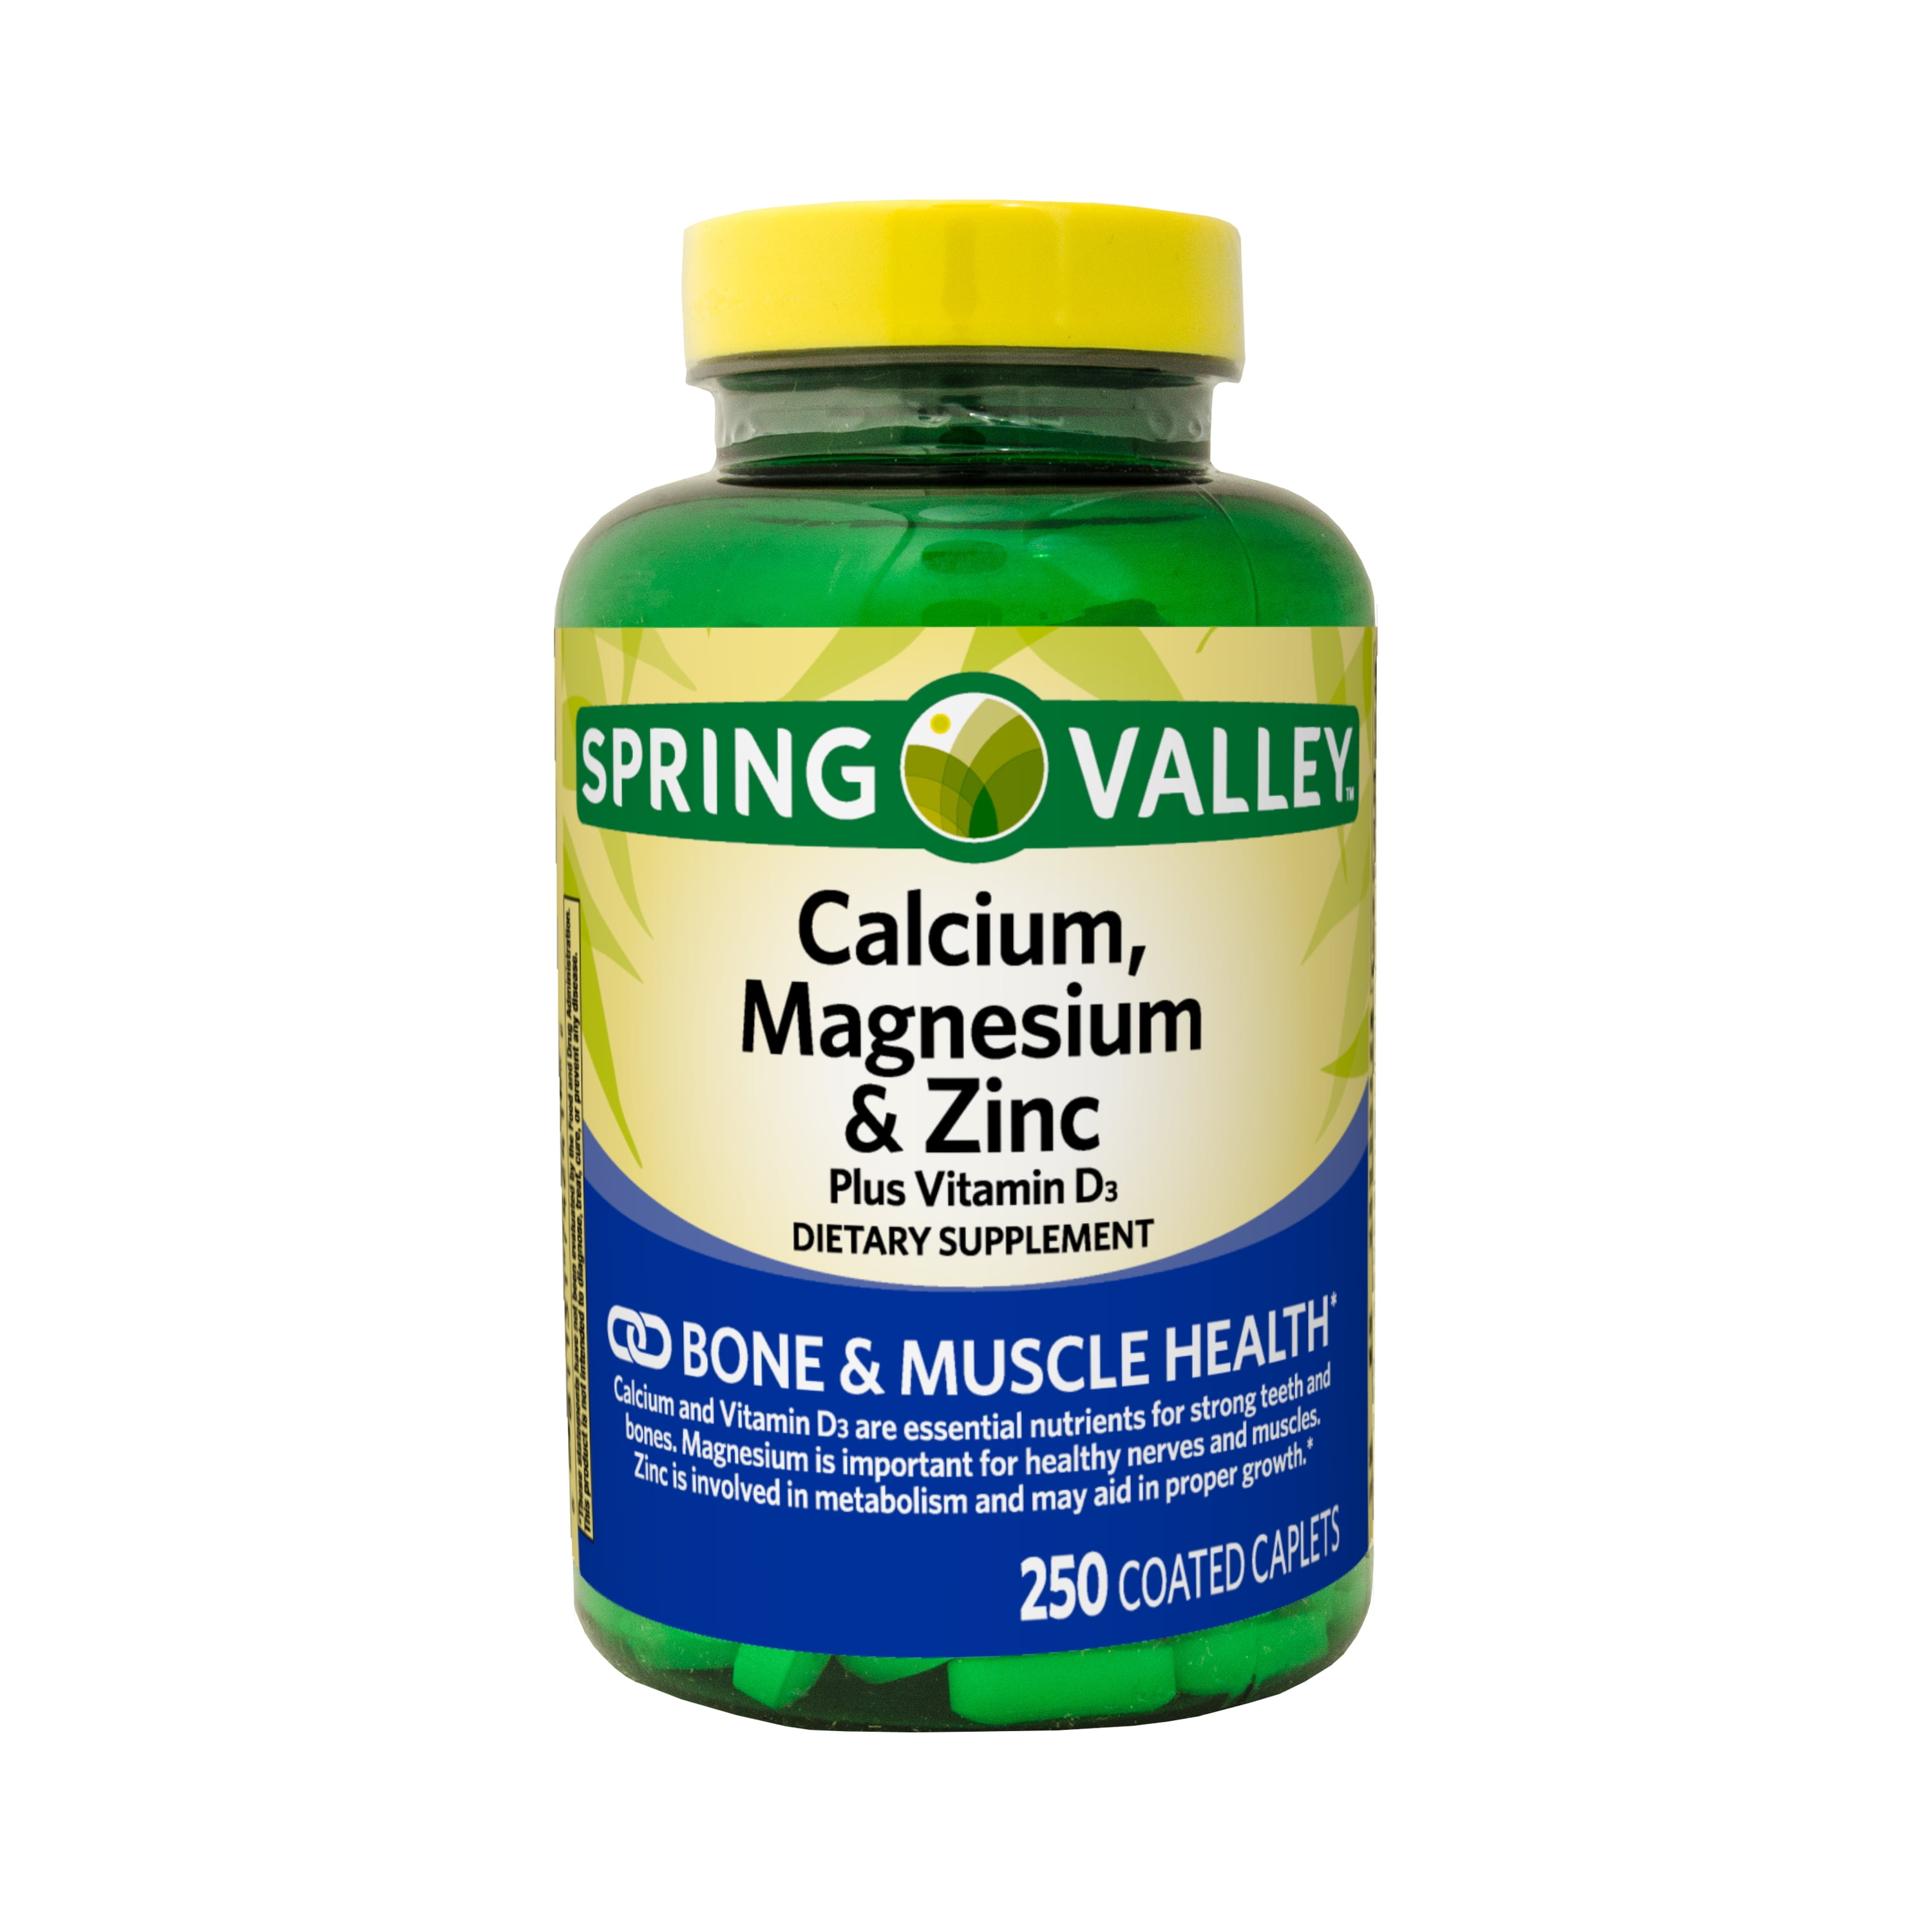 Spring Valley Calcium, Magnesium & Zinc Plus Vitamin D3 Caplets Dietary Supplement, 250 Count